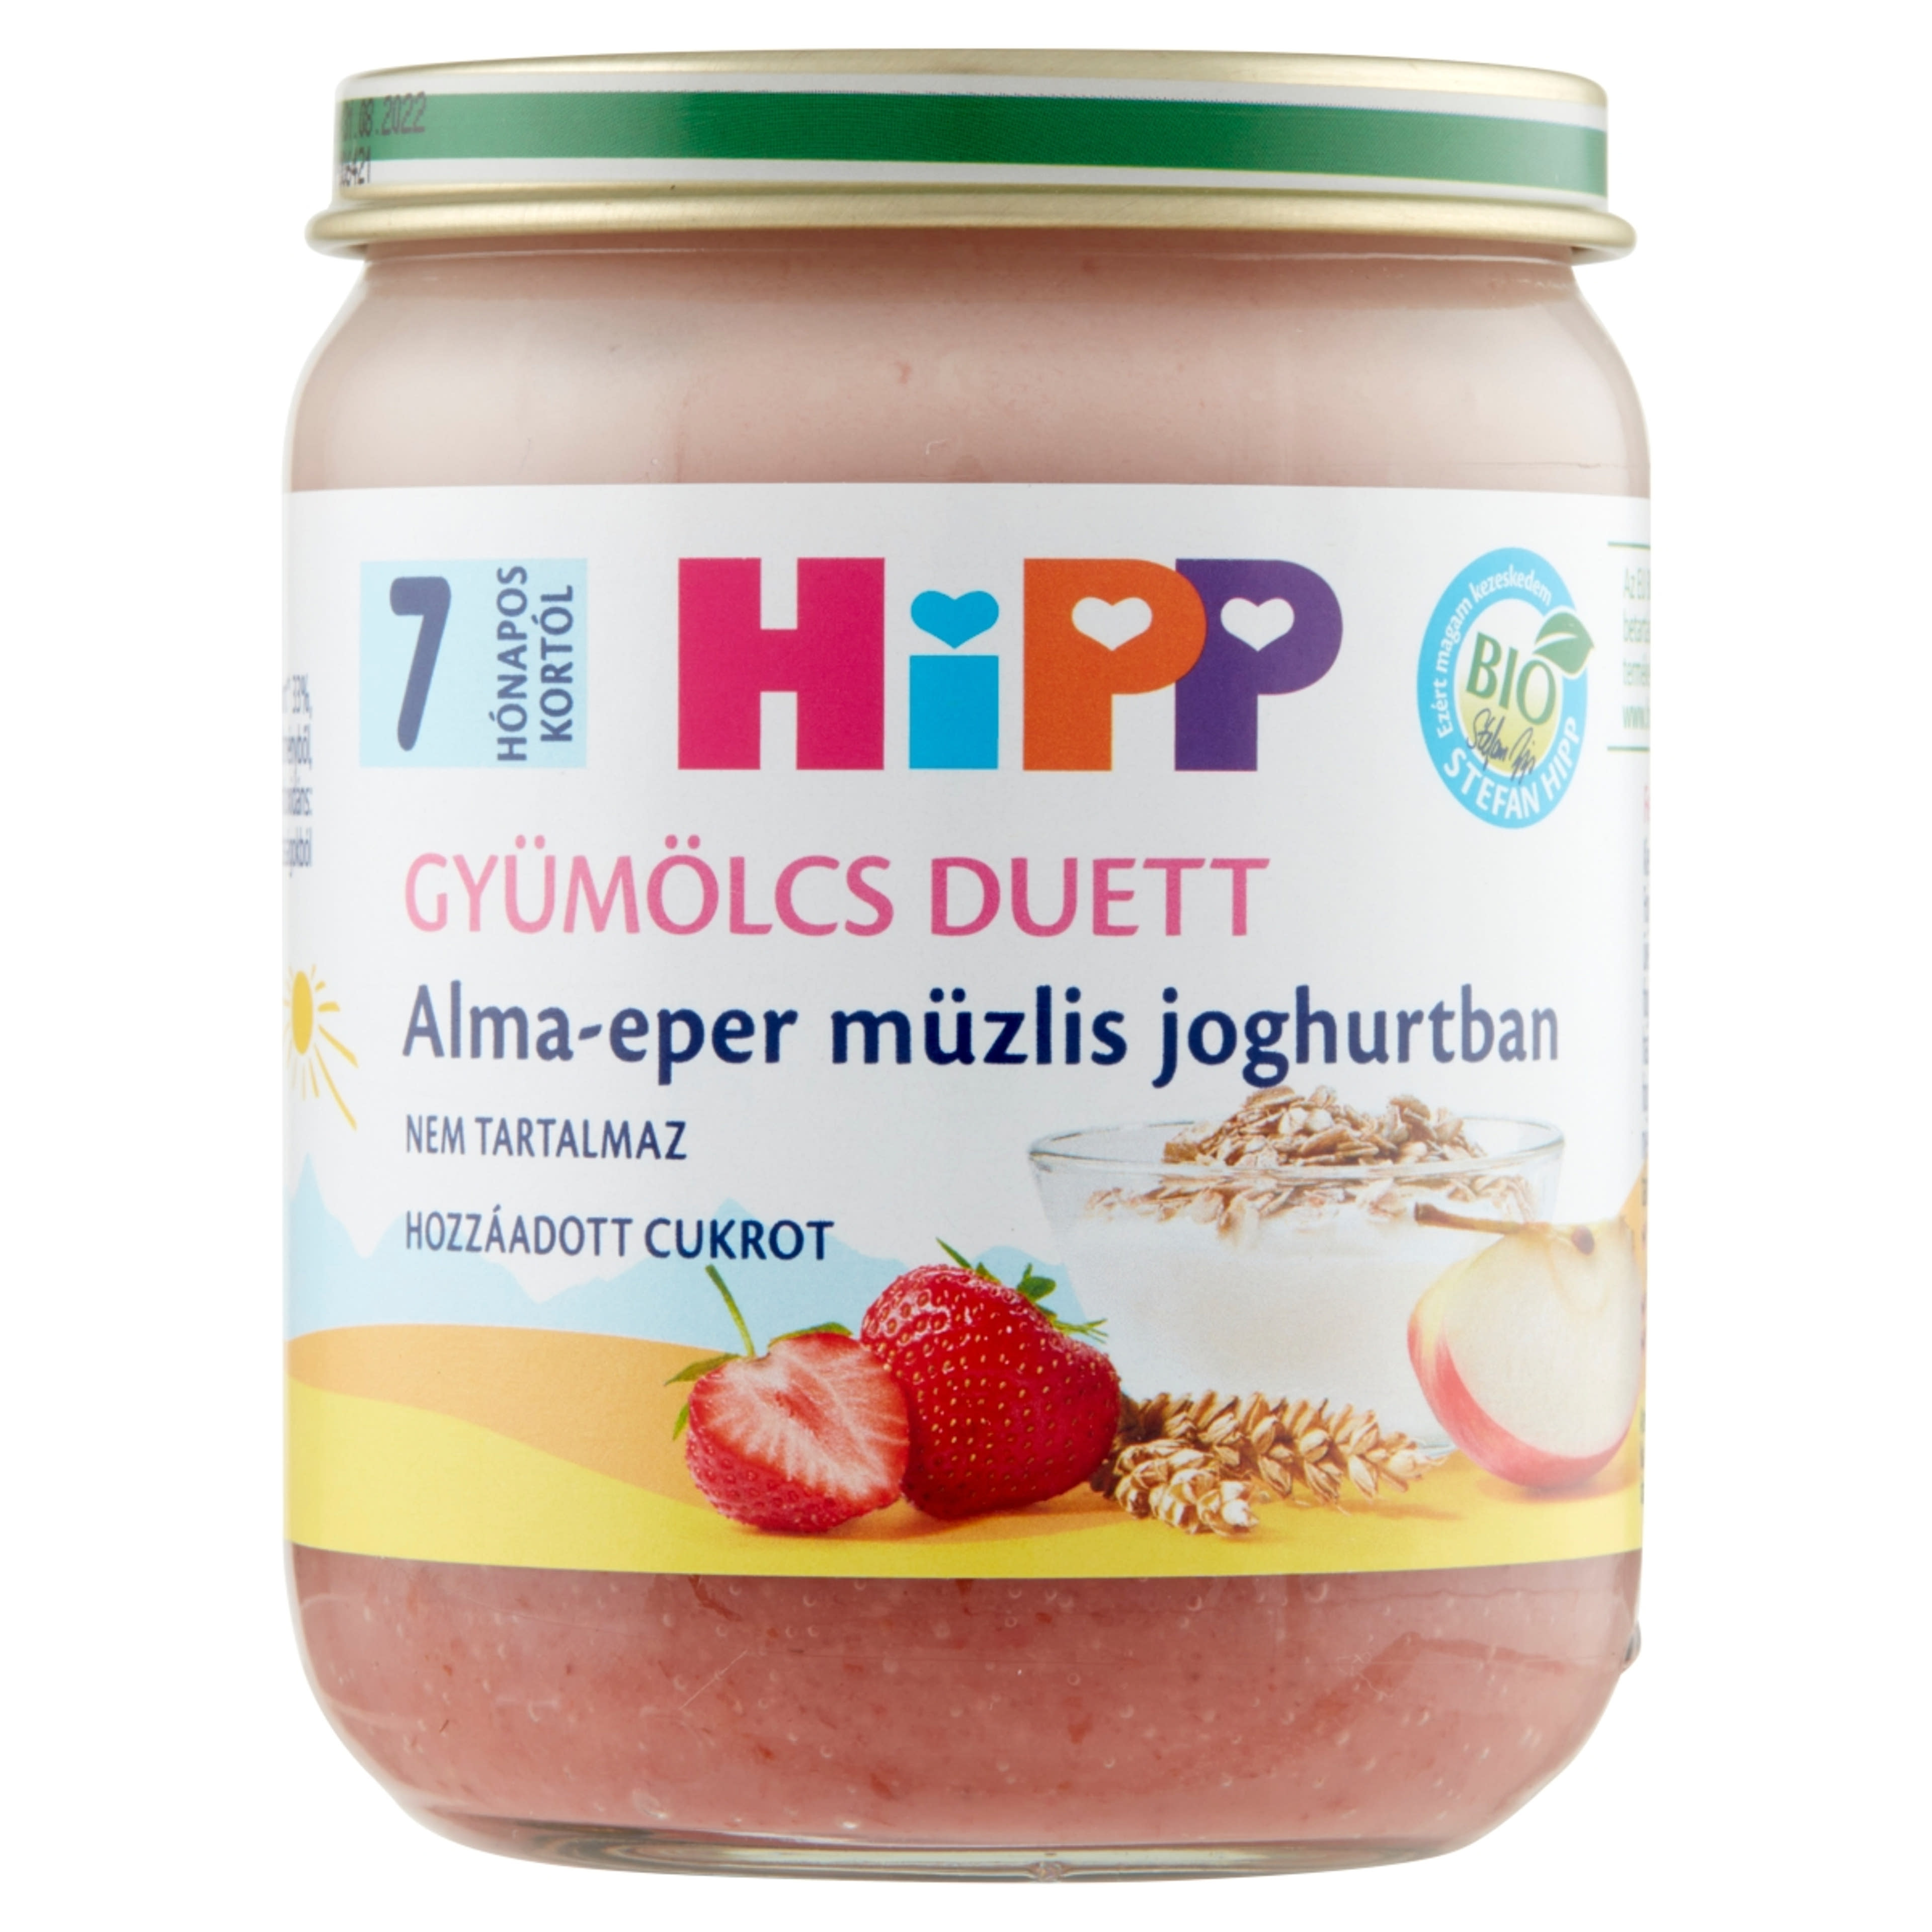 Hipp bio 7 hónapos kortól alma-eper-müzlis joghurtban - 160 g-1